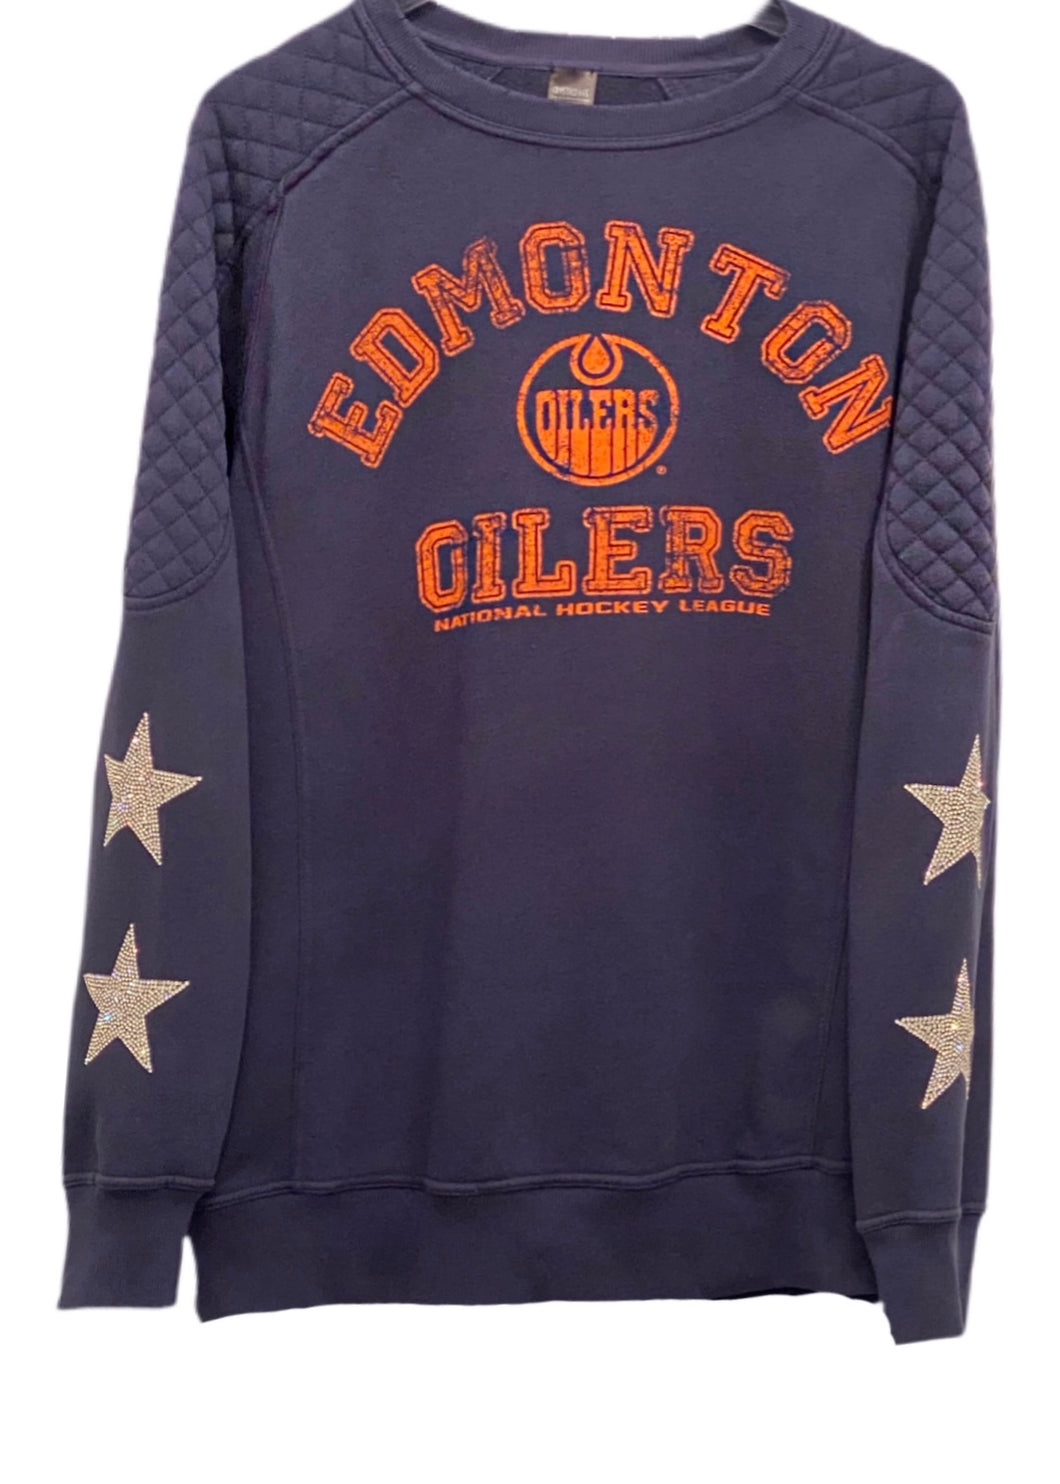 Edmonton Oilers, NHL One of a KIND Vintage Sweatshirt with Three Crystal Stars Design